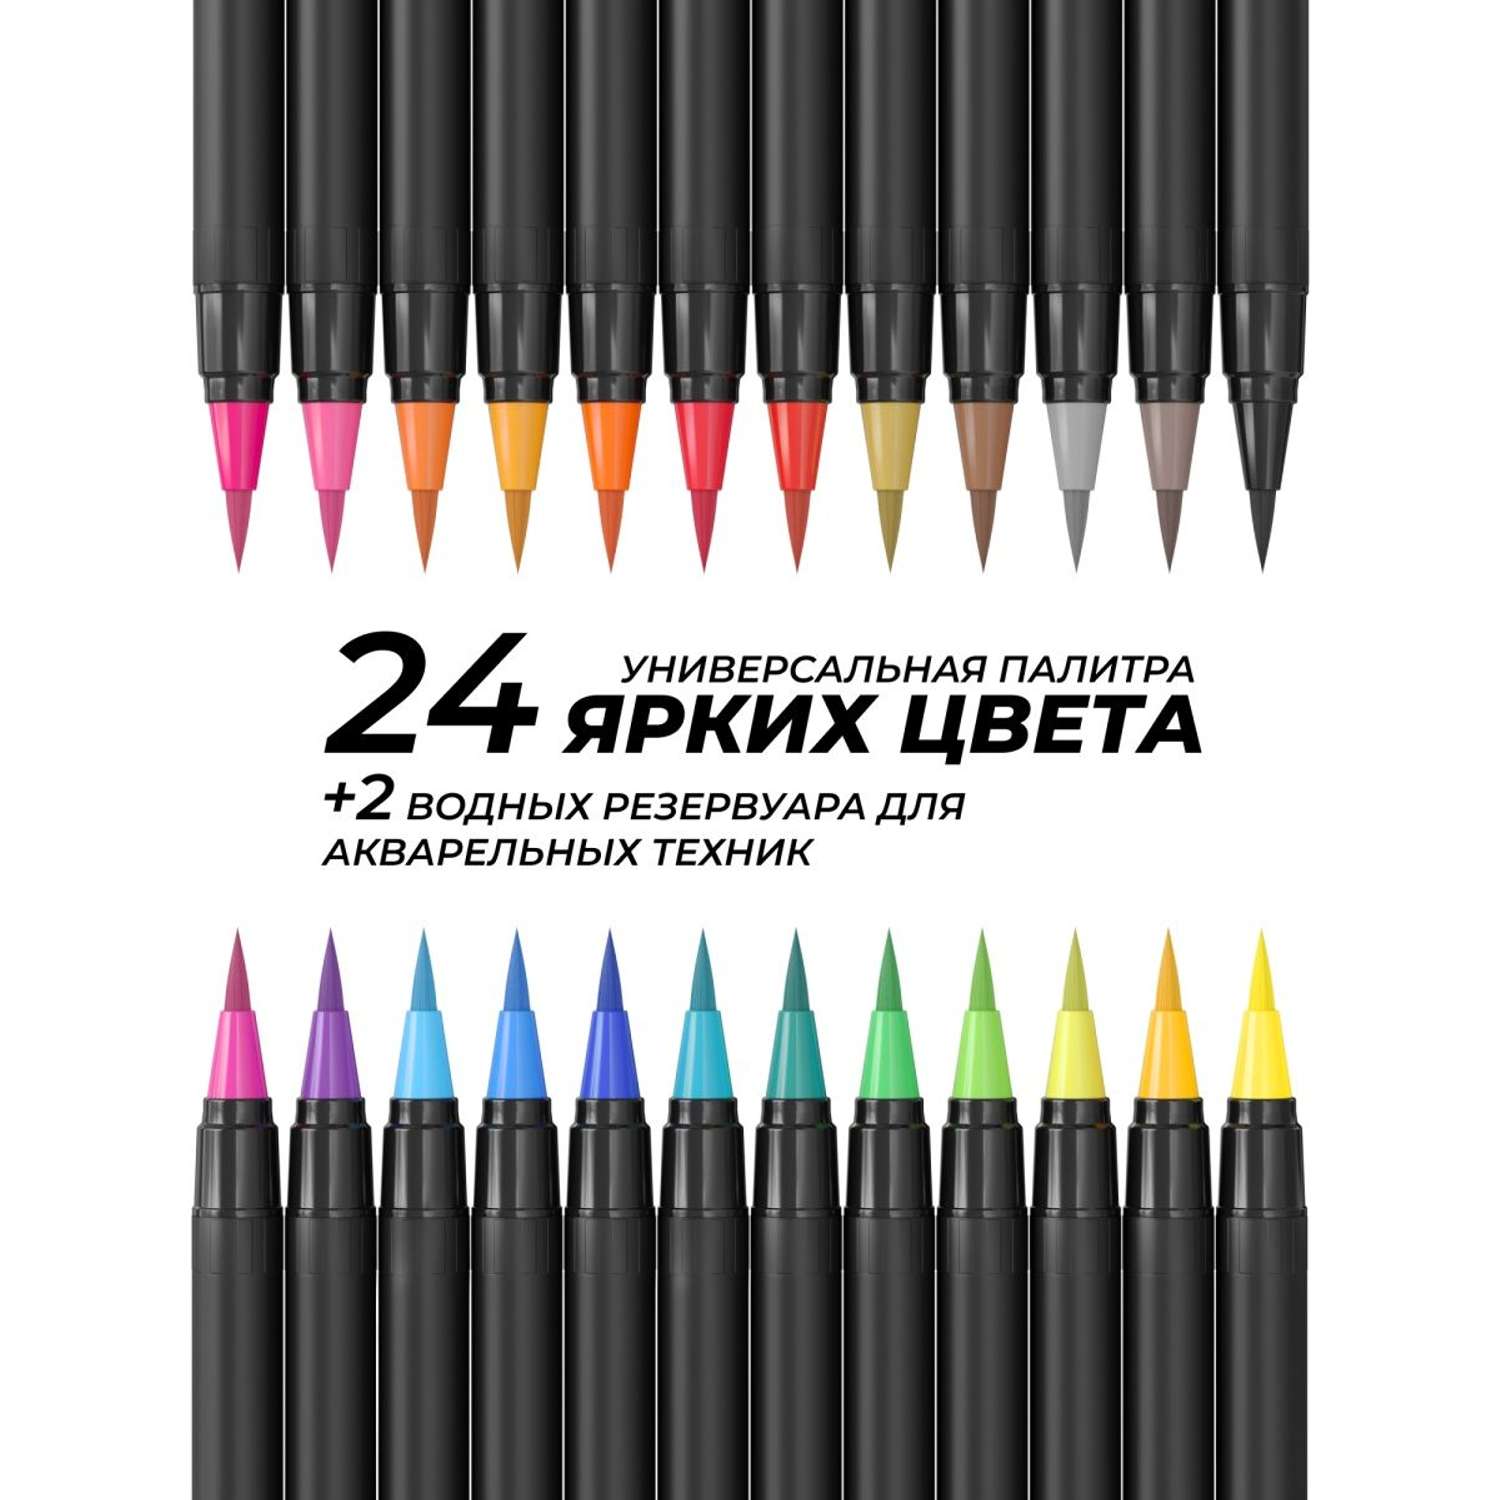 Акварельные маркеры DENKSY 24 цвета и 2 кисти с резервуаром - фото 3